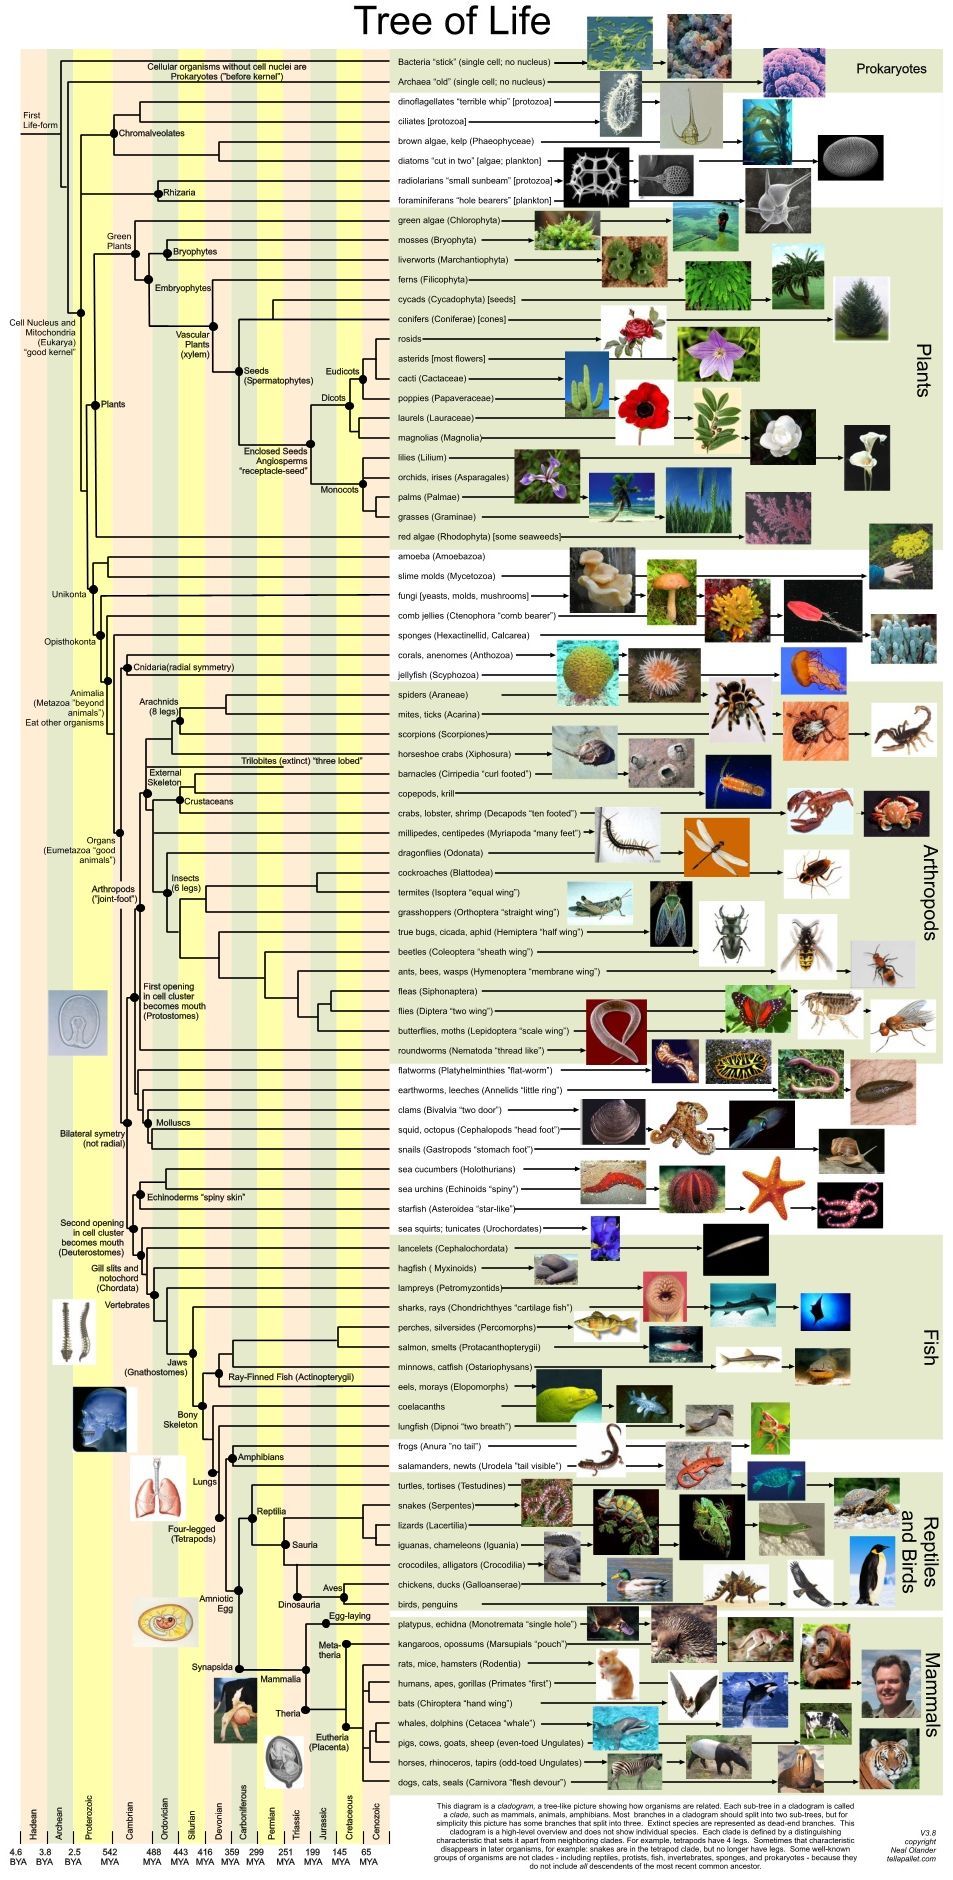 Origin and evolution of life pdf